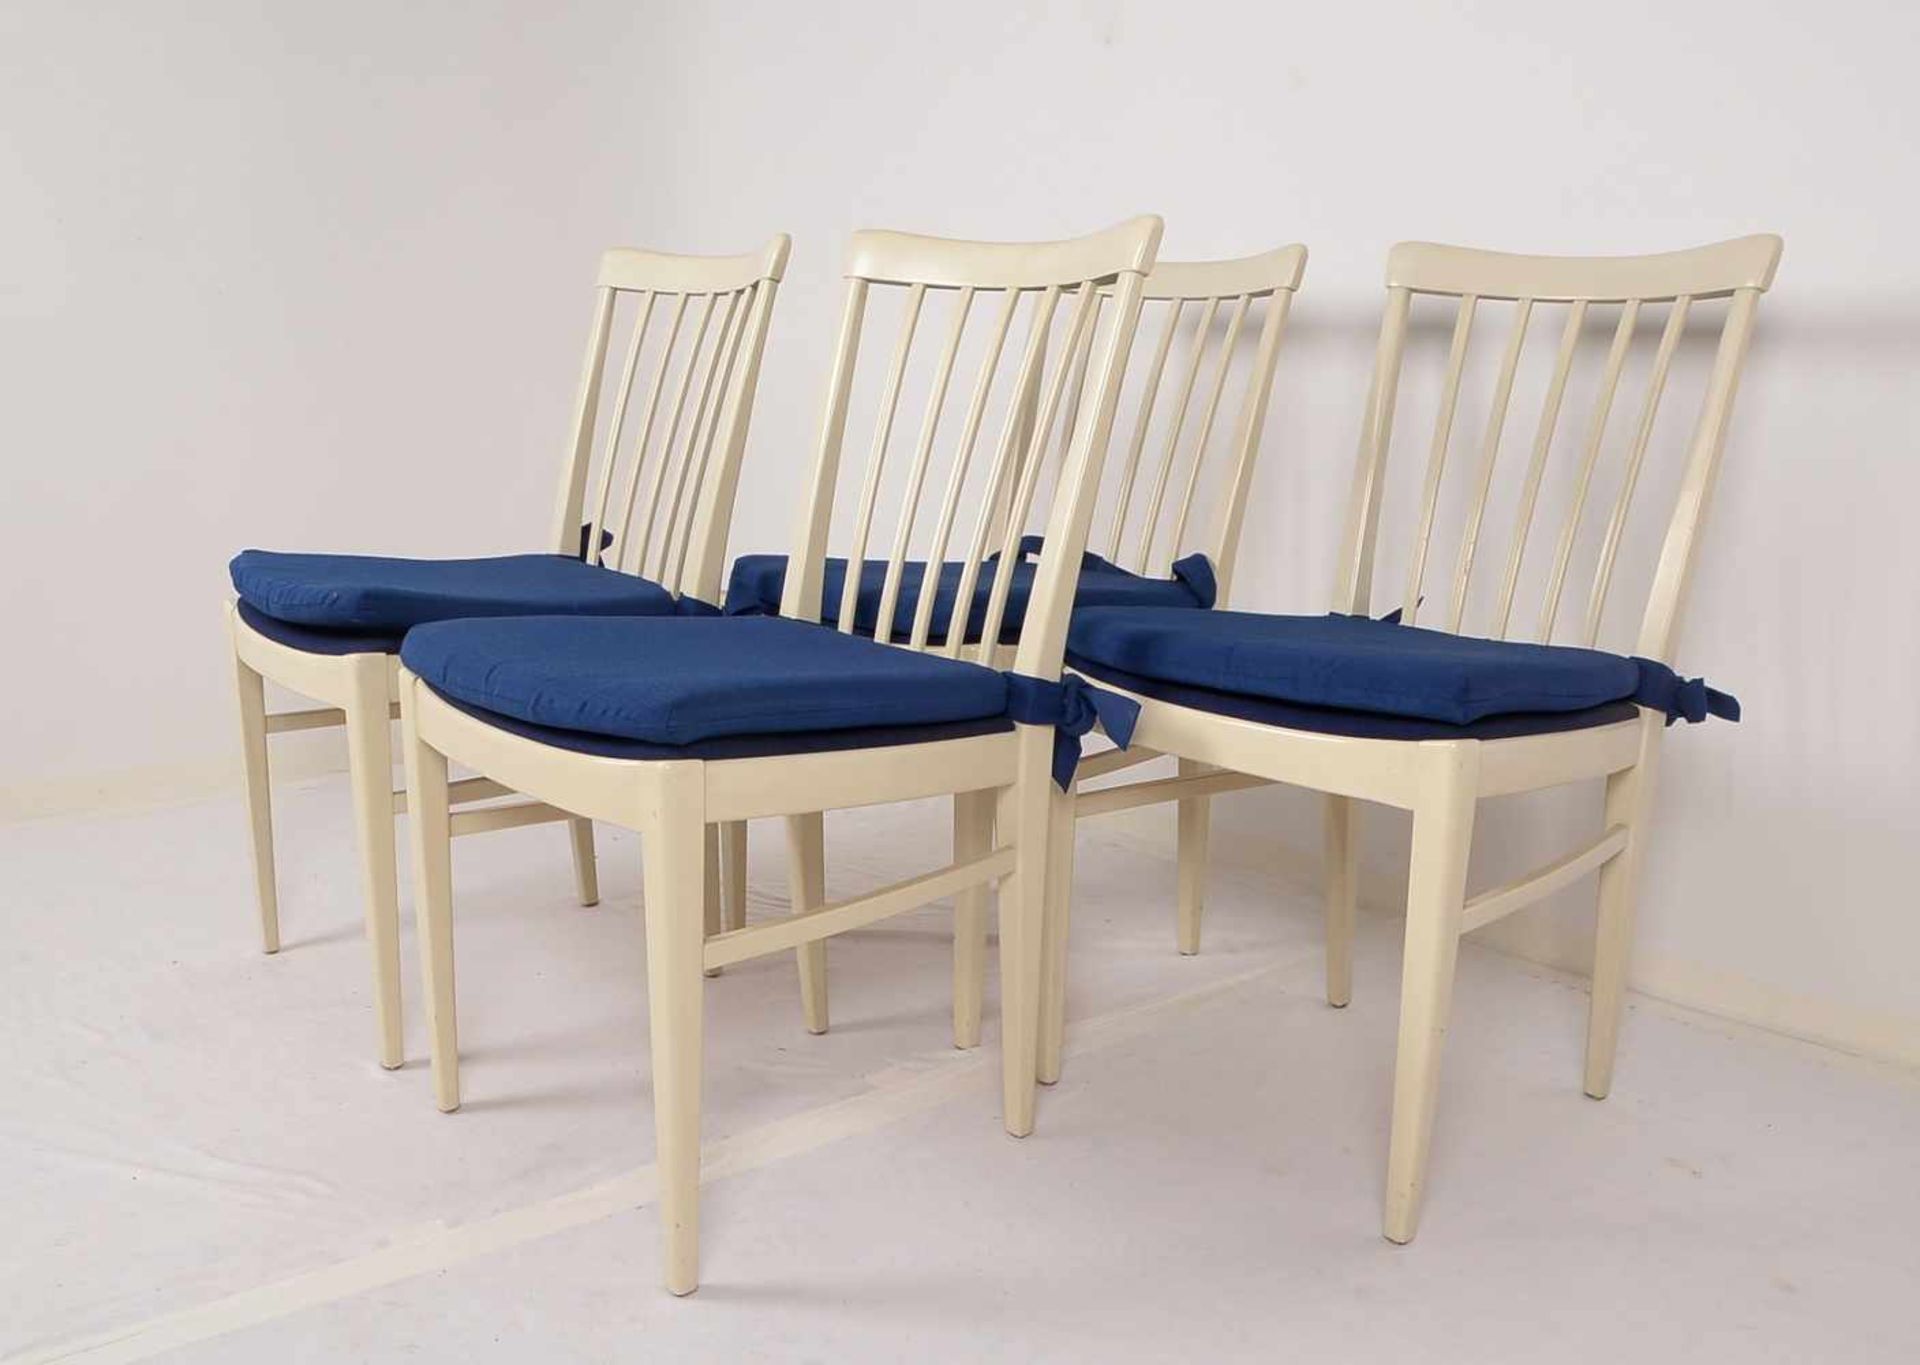 Bodafors/Schweden, Satz Stühle, creme-weiß gefasst, mit dunkelblauen Sitzpolstern, Entwurf: Carl